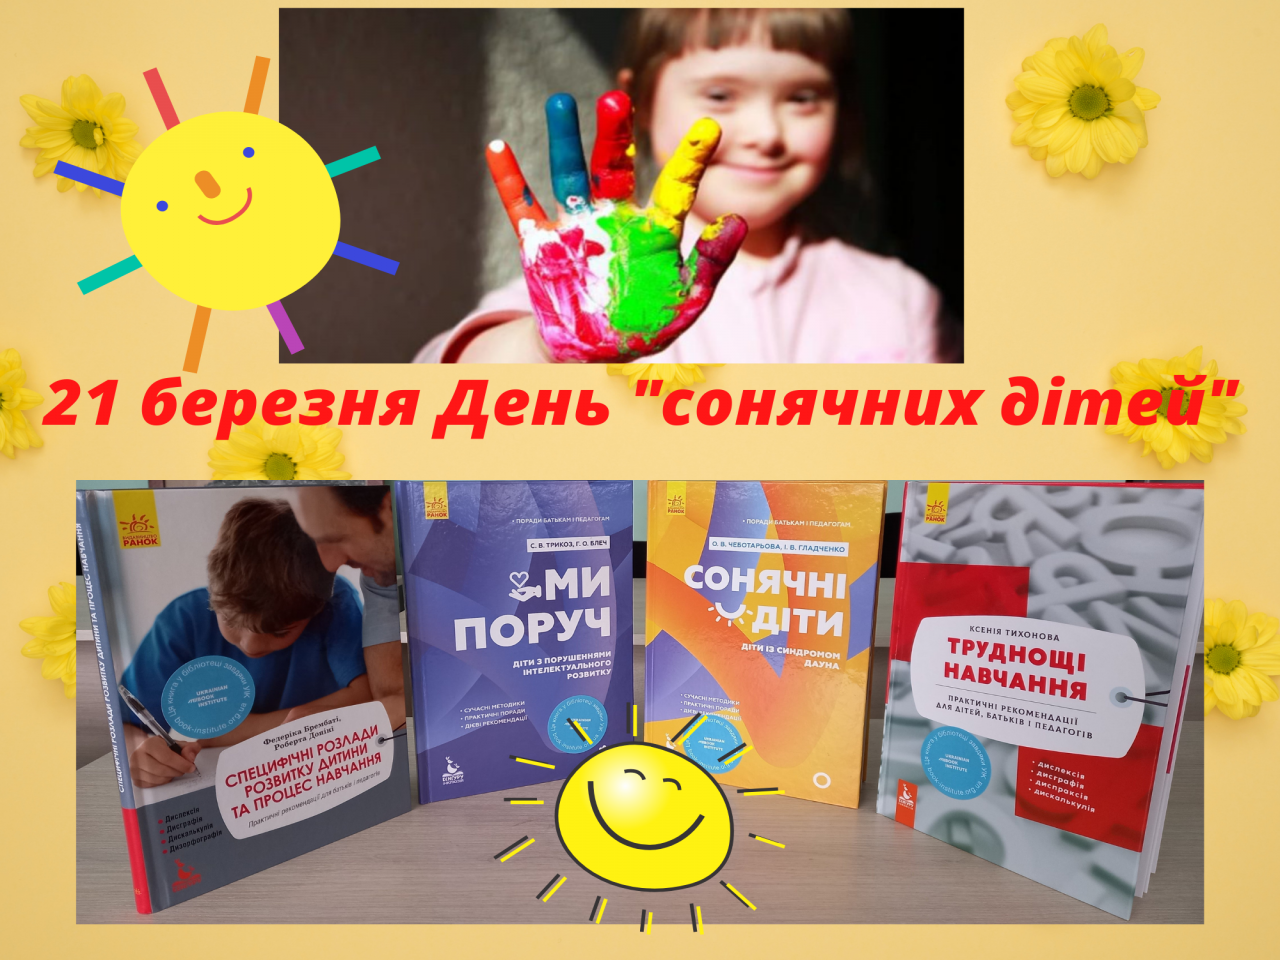 http://dunrada.gov.ua/uploadfile/archive_news/2021/03/22/2021-03-22_2168/images/images-26338.png